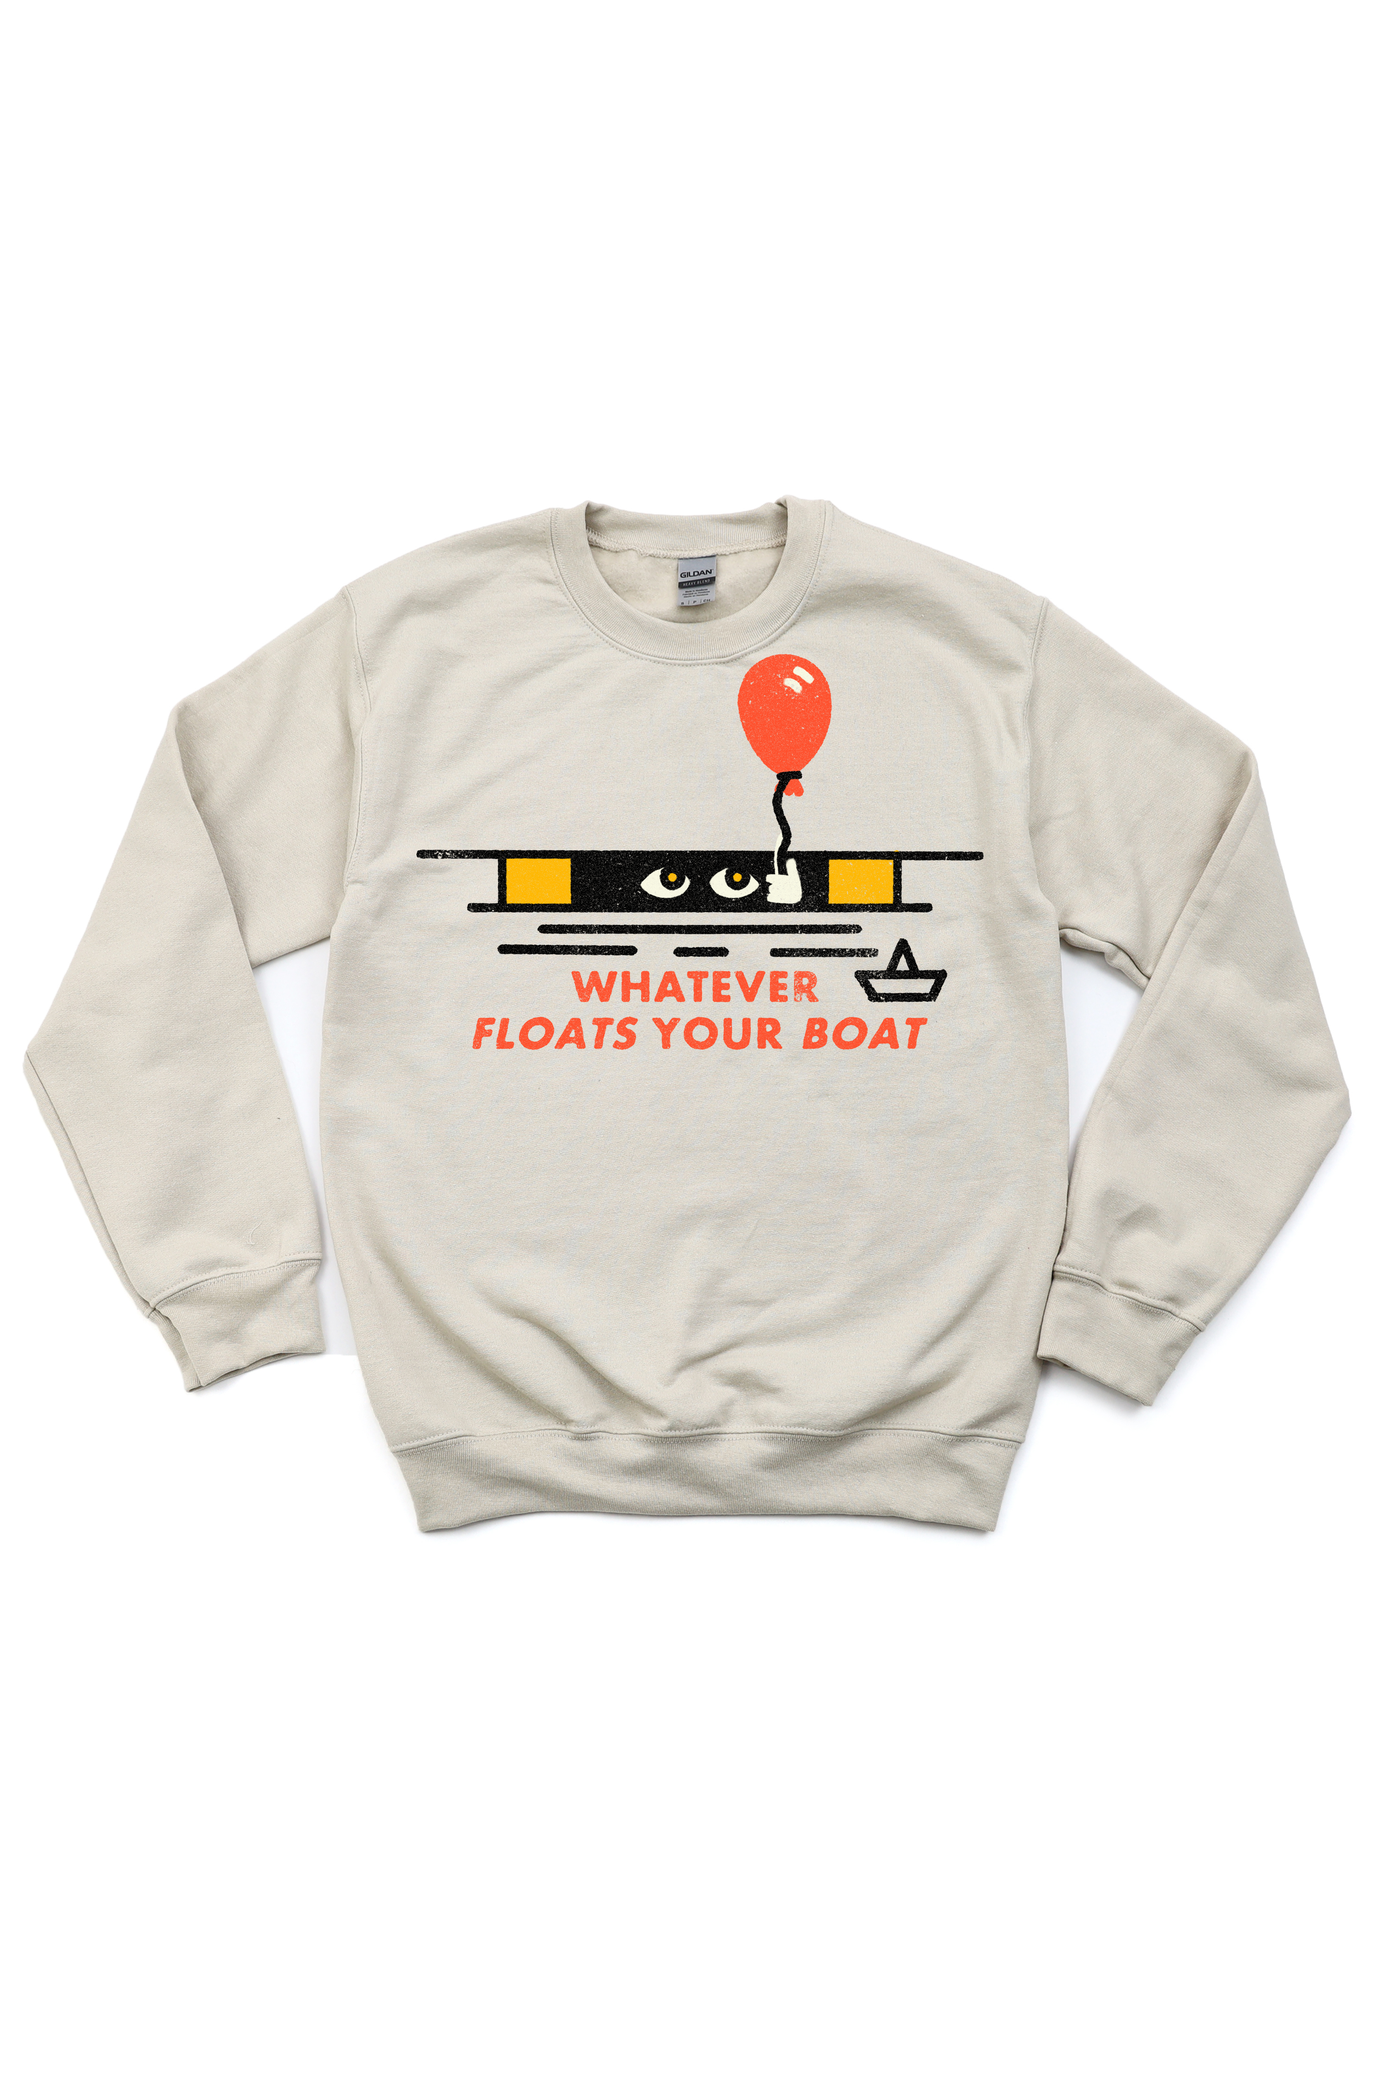 Whatever Floats Your Boat Tee/Sweatshirt